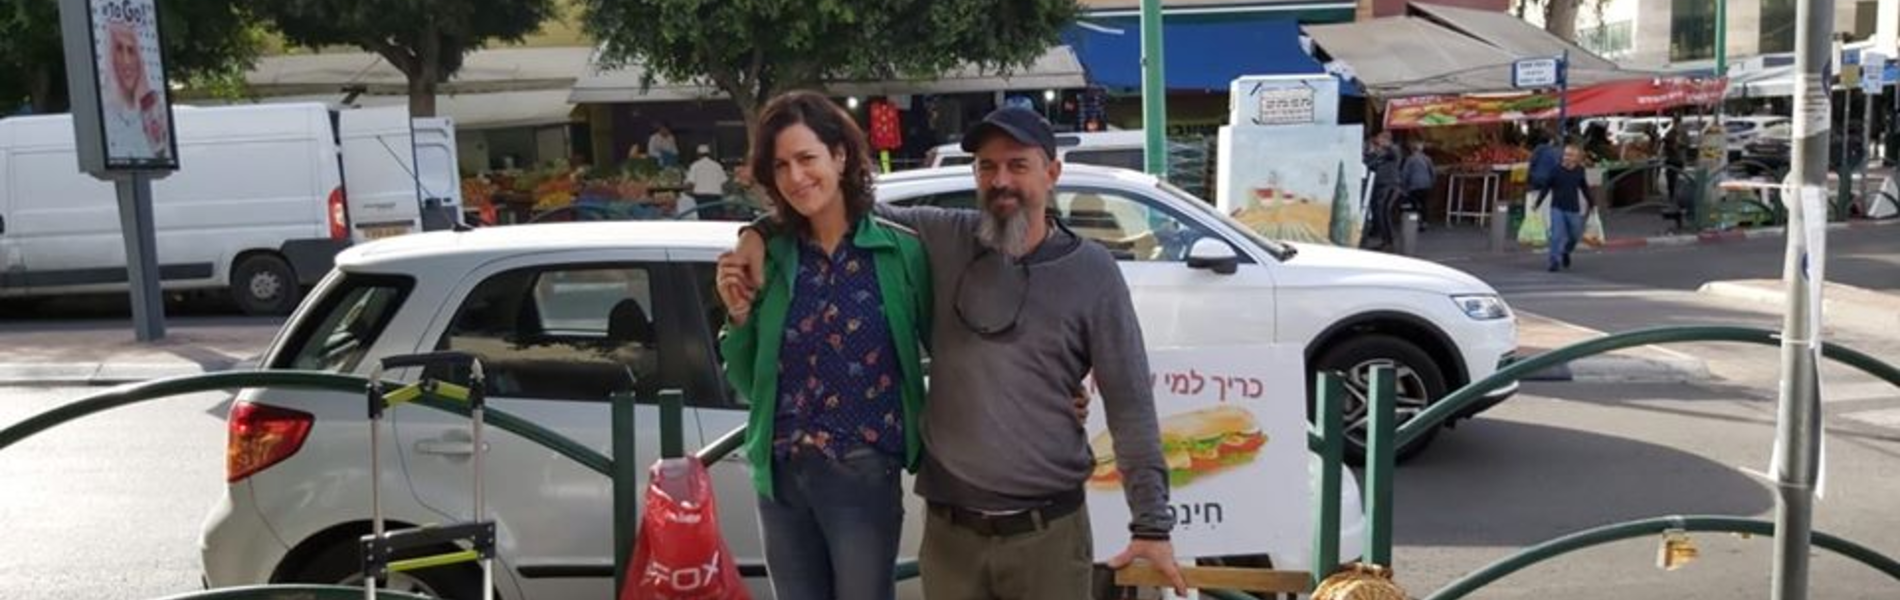 האישה מאחורי יוזמת כריך למי שצריך: "התוכנית היא שלא יישאר אף רעב בישראל"